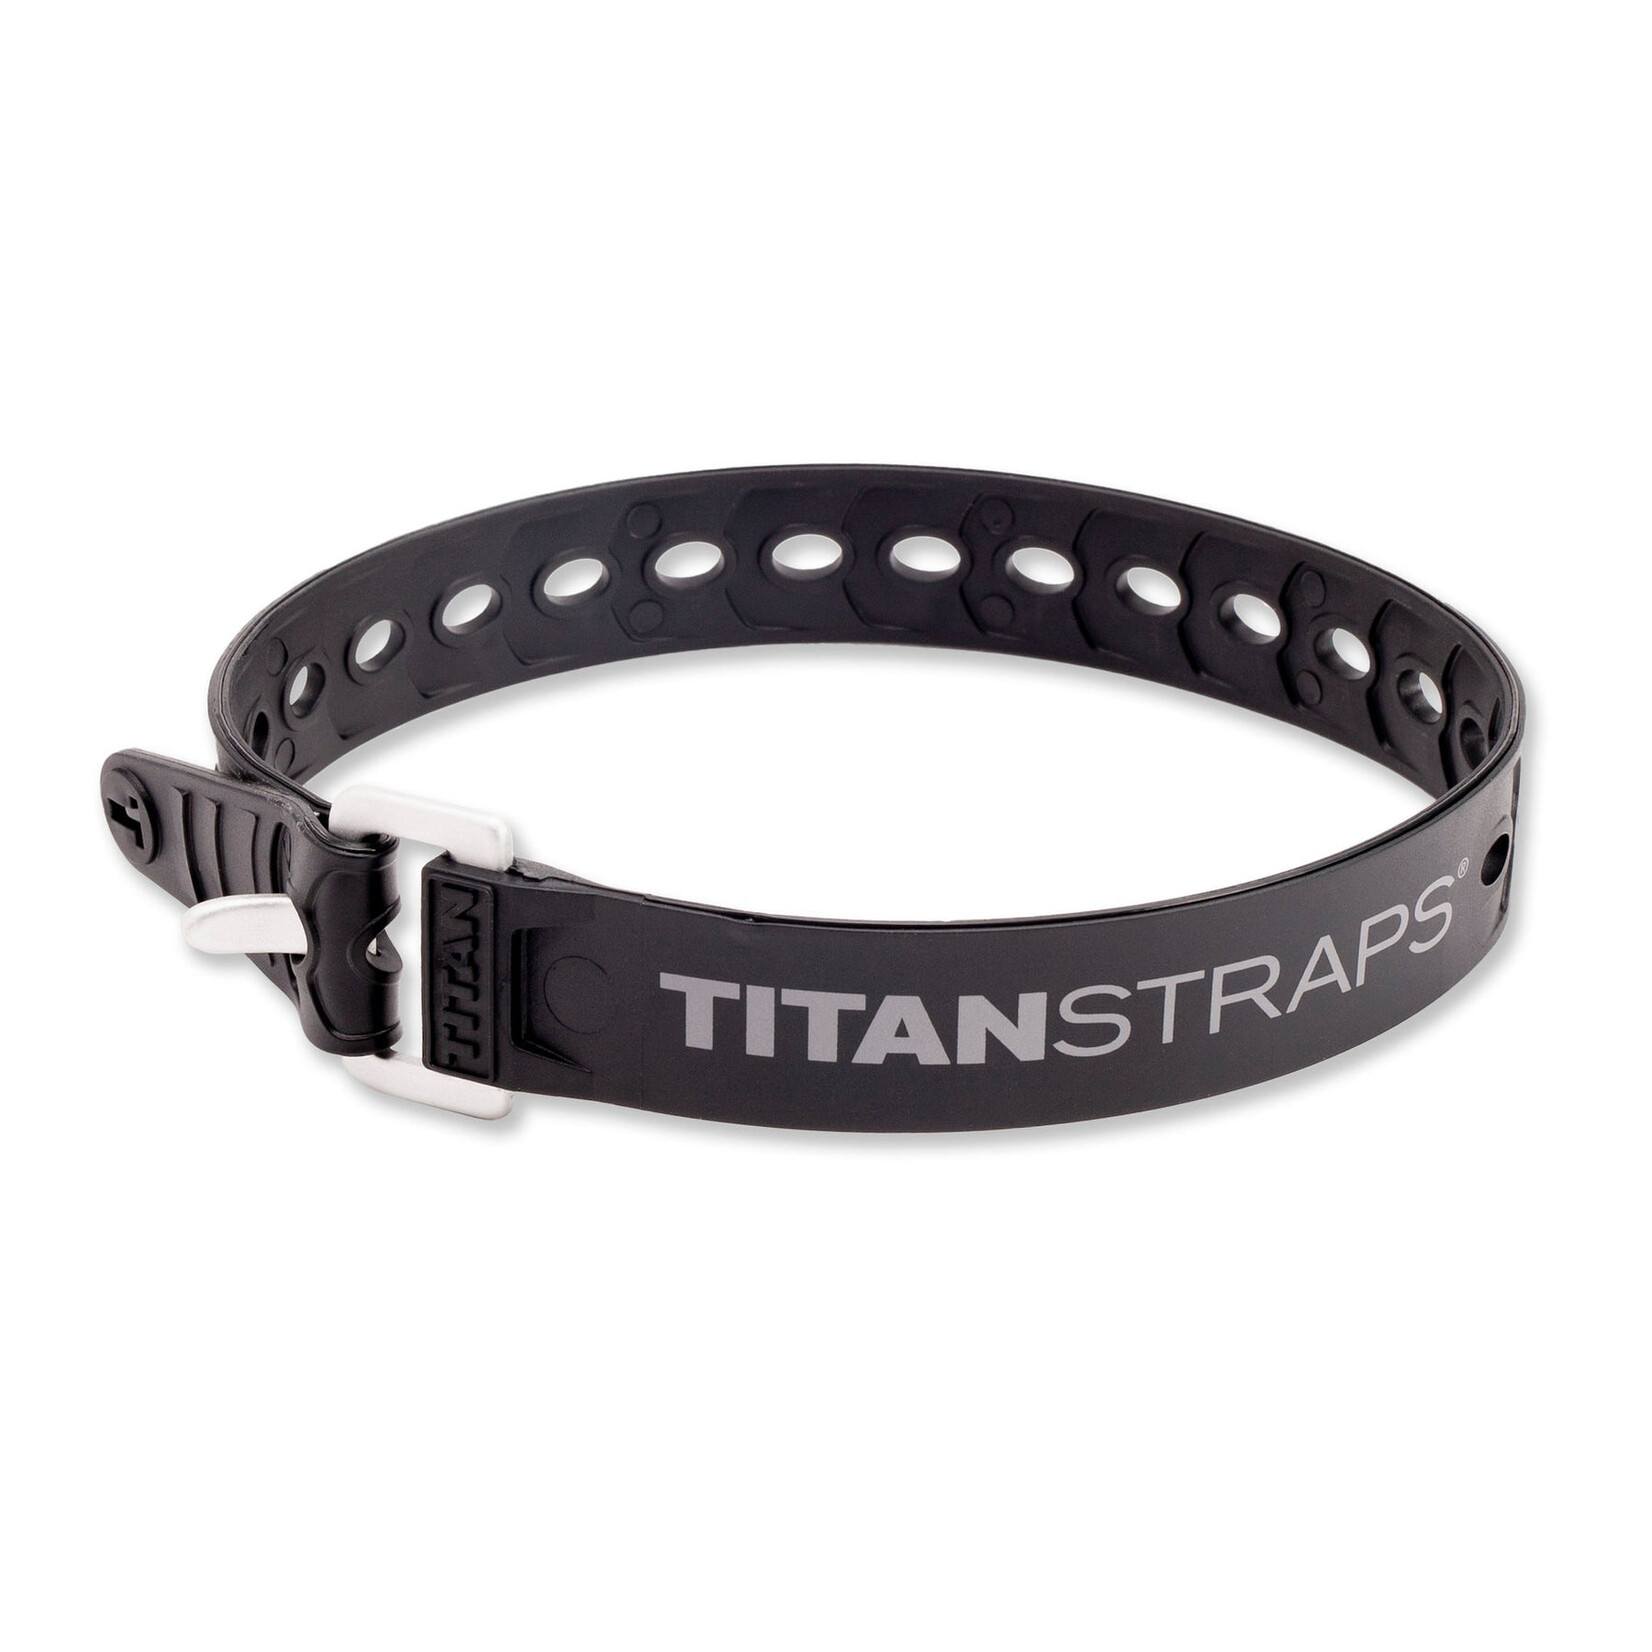 TITANSTRAPS TITANSTRAPS Industrial Strap - 25"